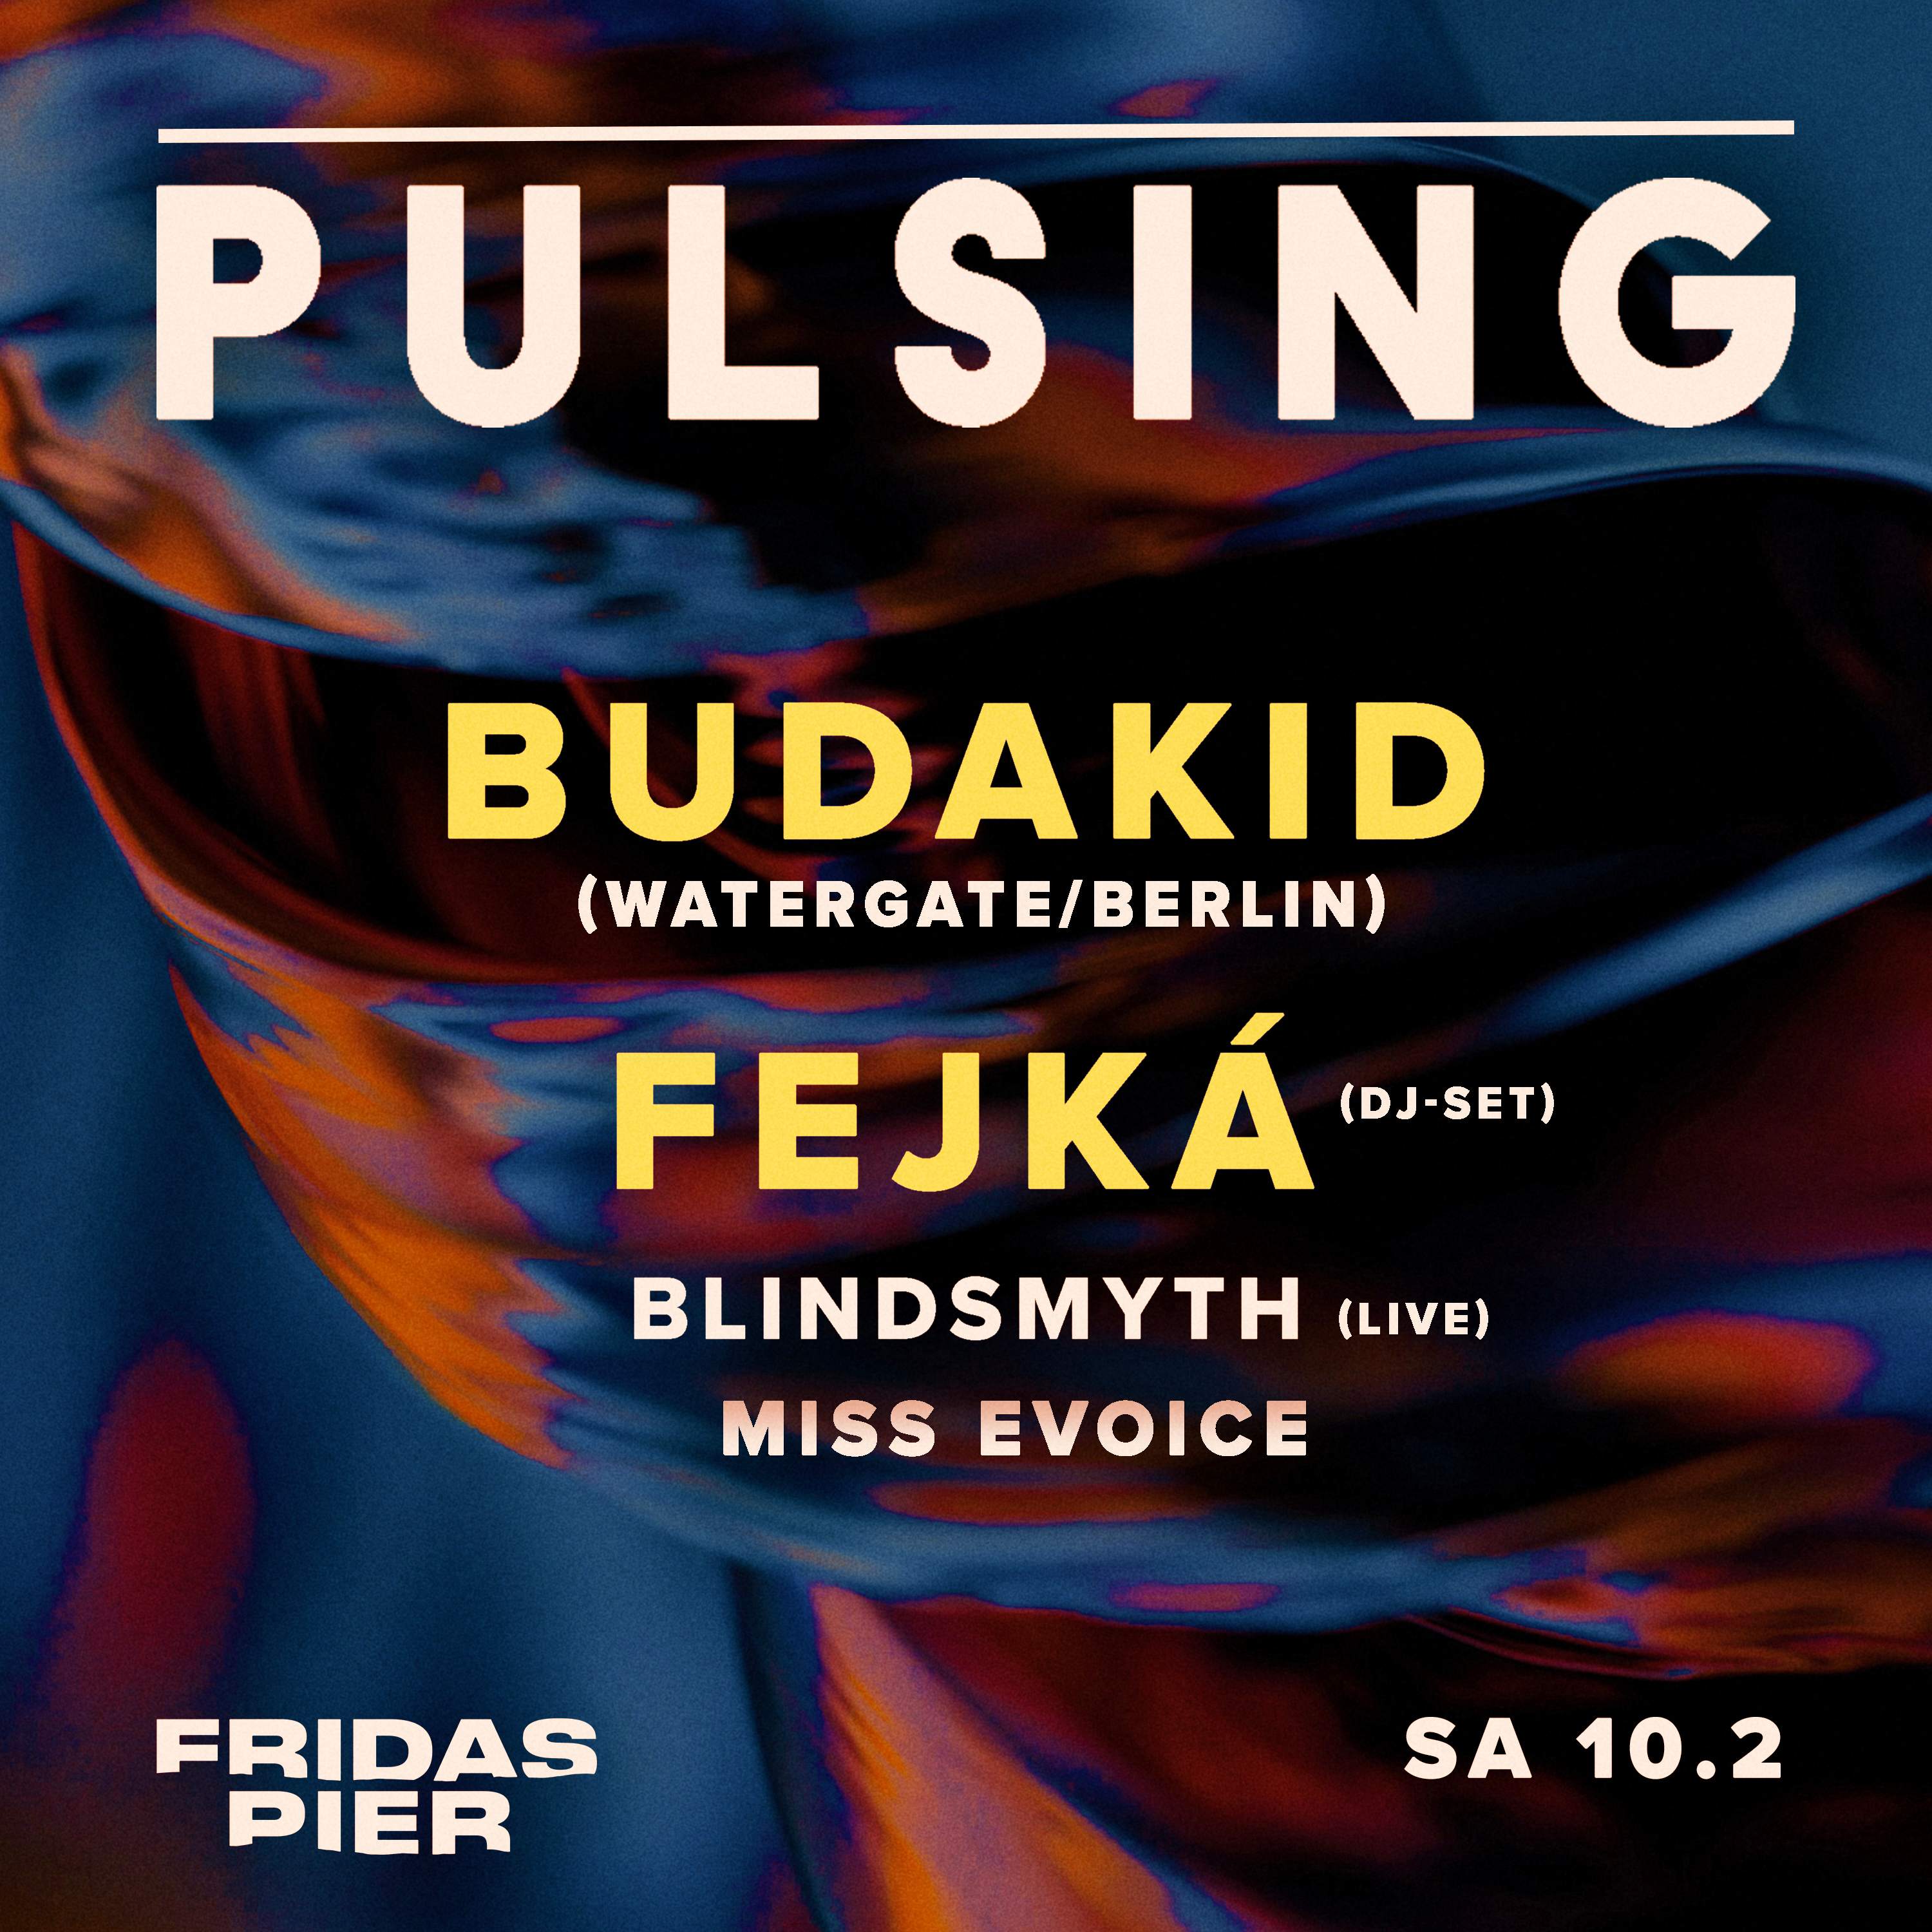 PULSING PRES. Budakid (WATERGATE/BERLIN), Fejká (DJ SET), Blindsmyth (LIVE), Miss Evoice - フライヤー表